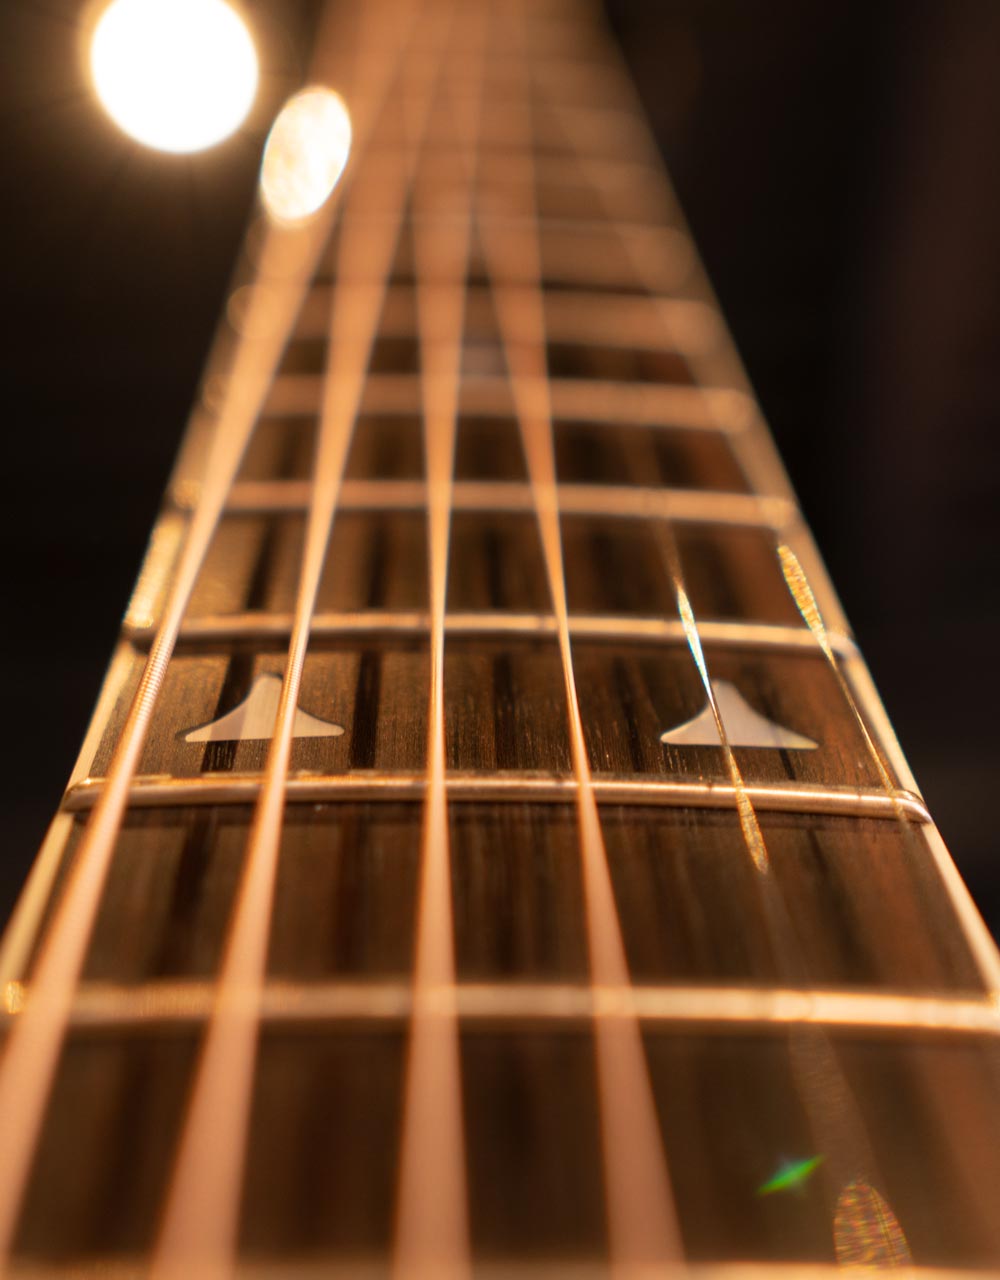 Электроакустическая гитара Ovation 2078AX-1 Elite Deep Contour Cutaway Sunburst - купить в "Гитарном Клубе"